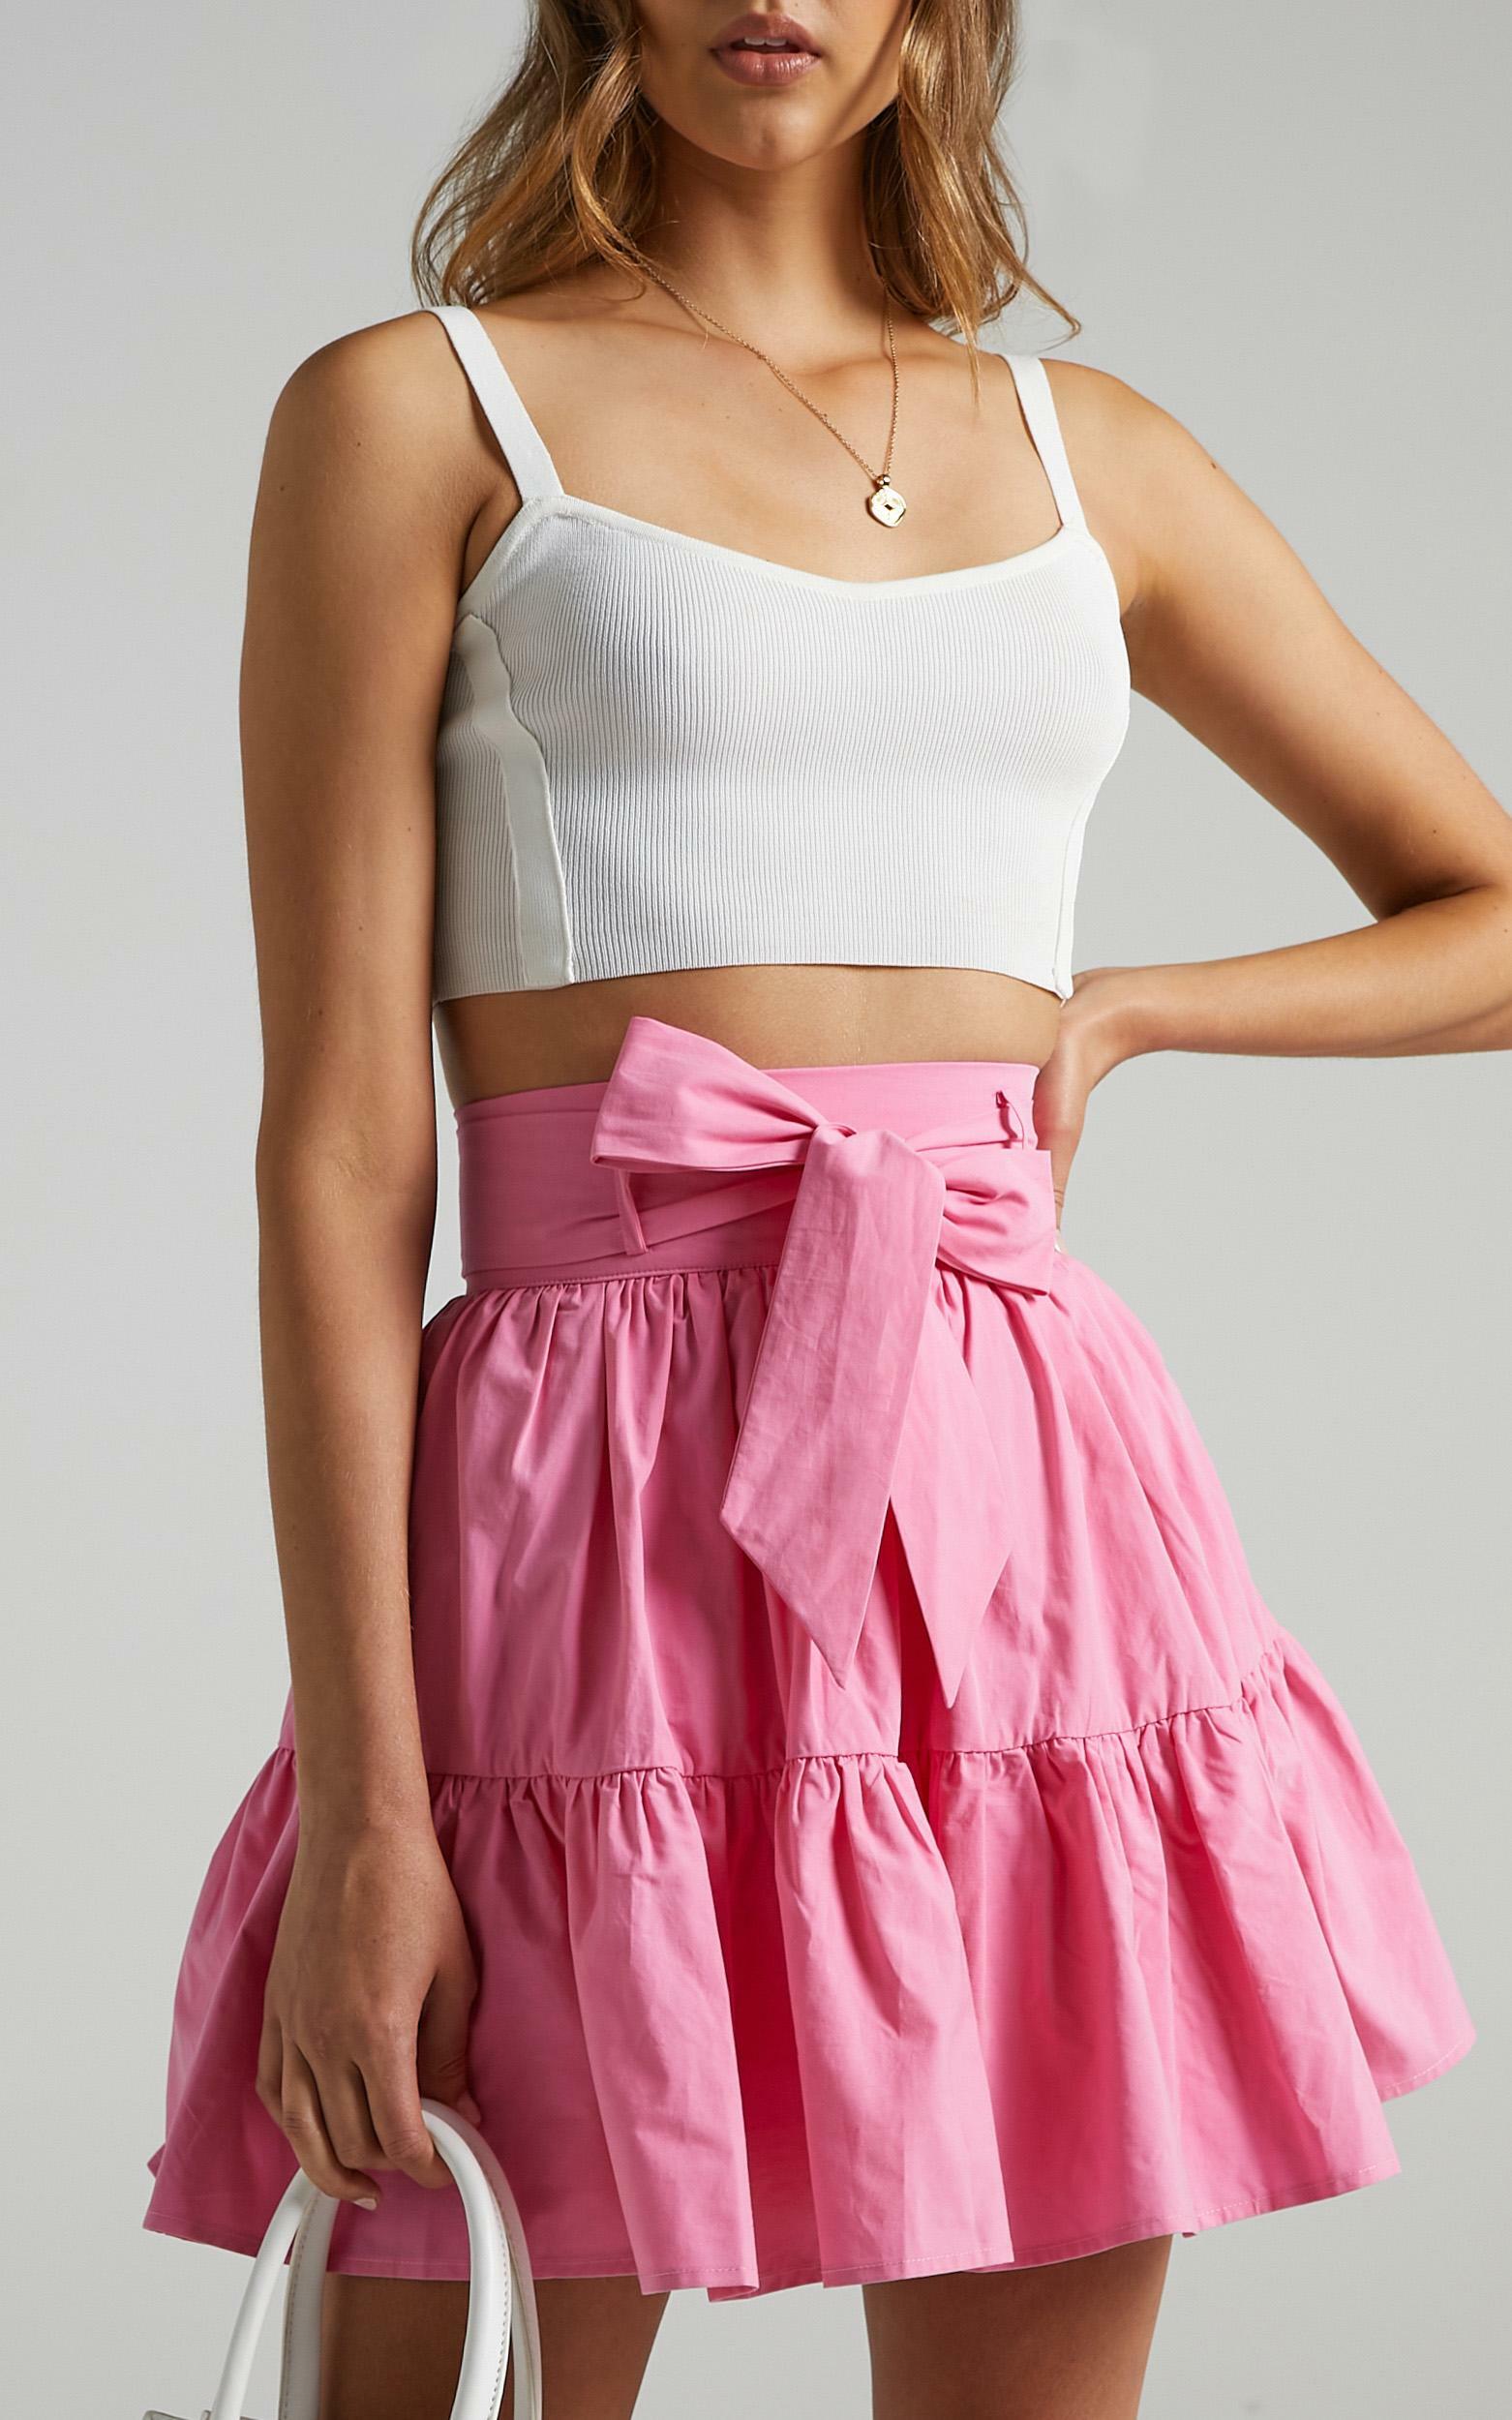 Sabah Skirt in Bubblegum Pink - 06, PNK1, hi-res image number null